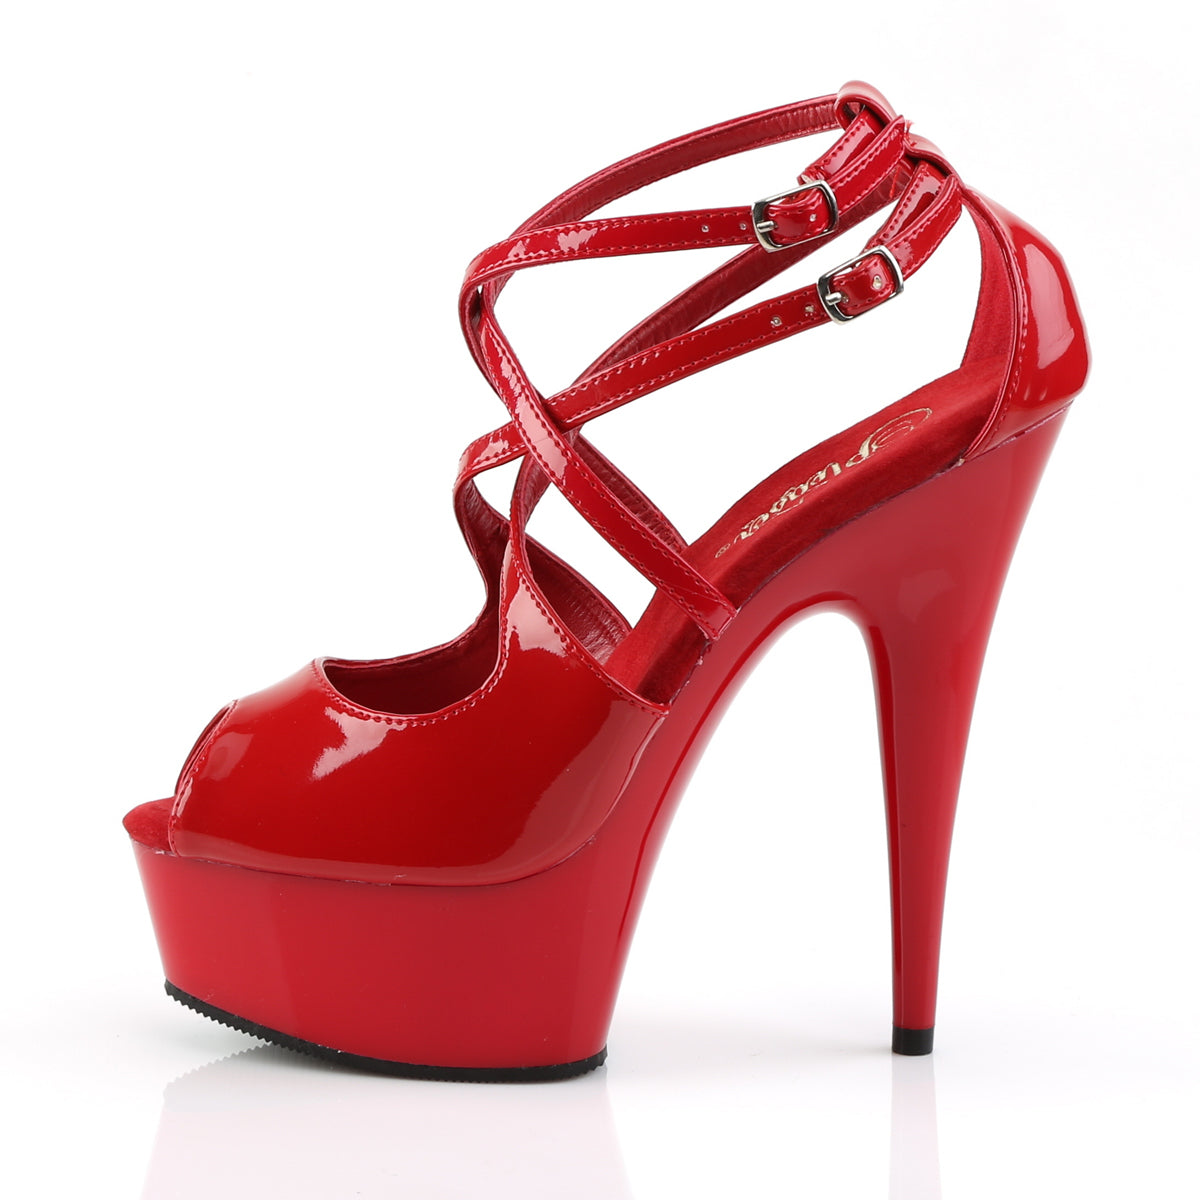 Pleaser Sandali da donna DELIGHT-612 rosso / rosso